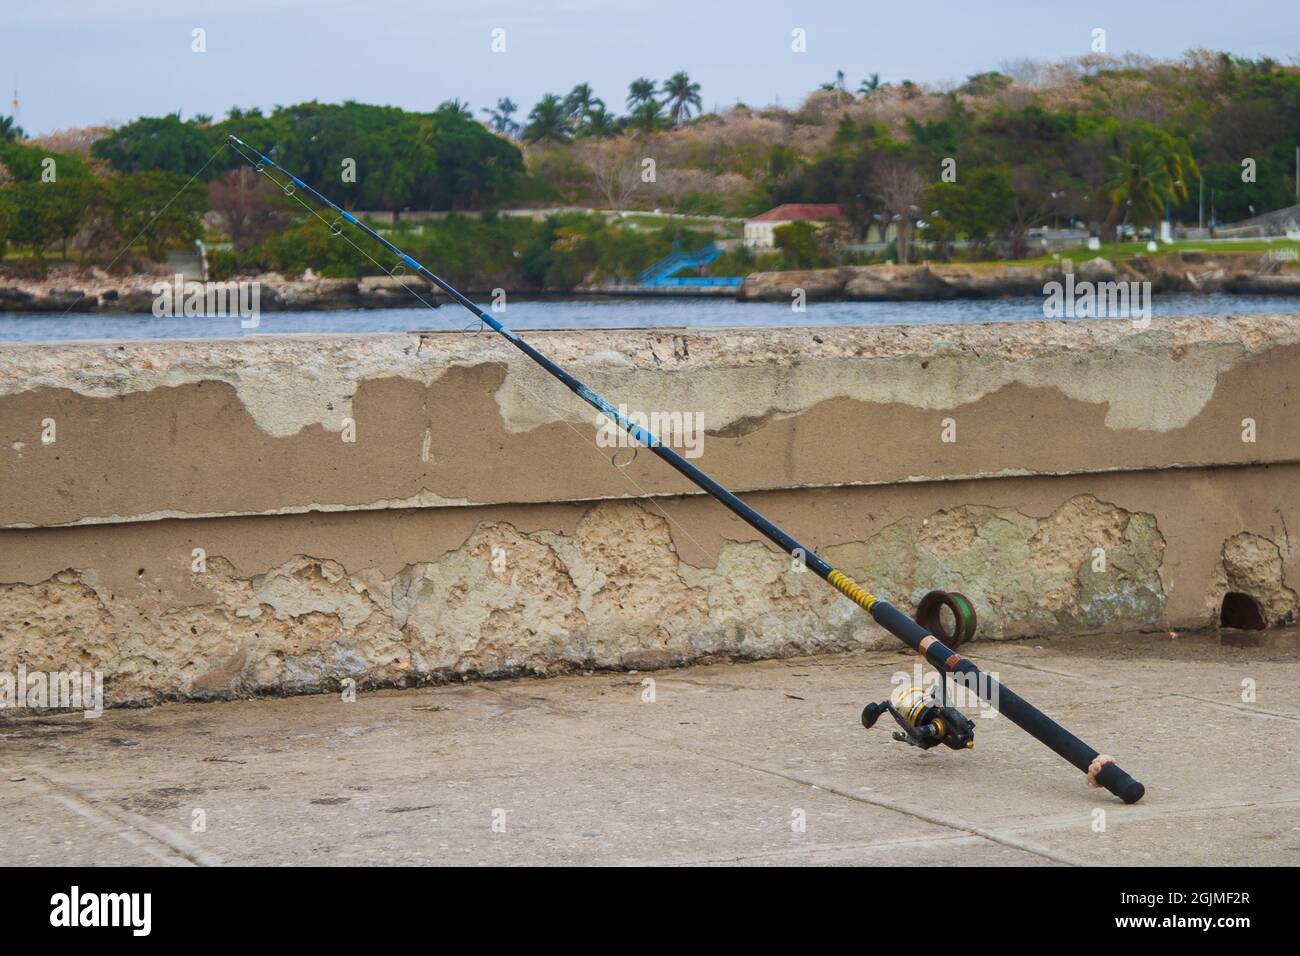 Canne à pêche sur une barrière de chemin en béton à côté d'une rivière Banque D'Images